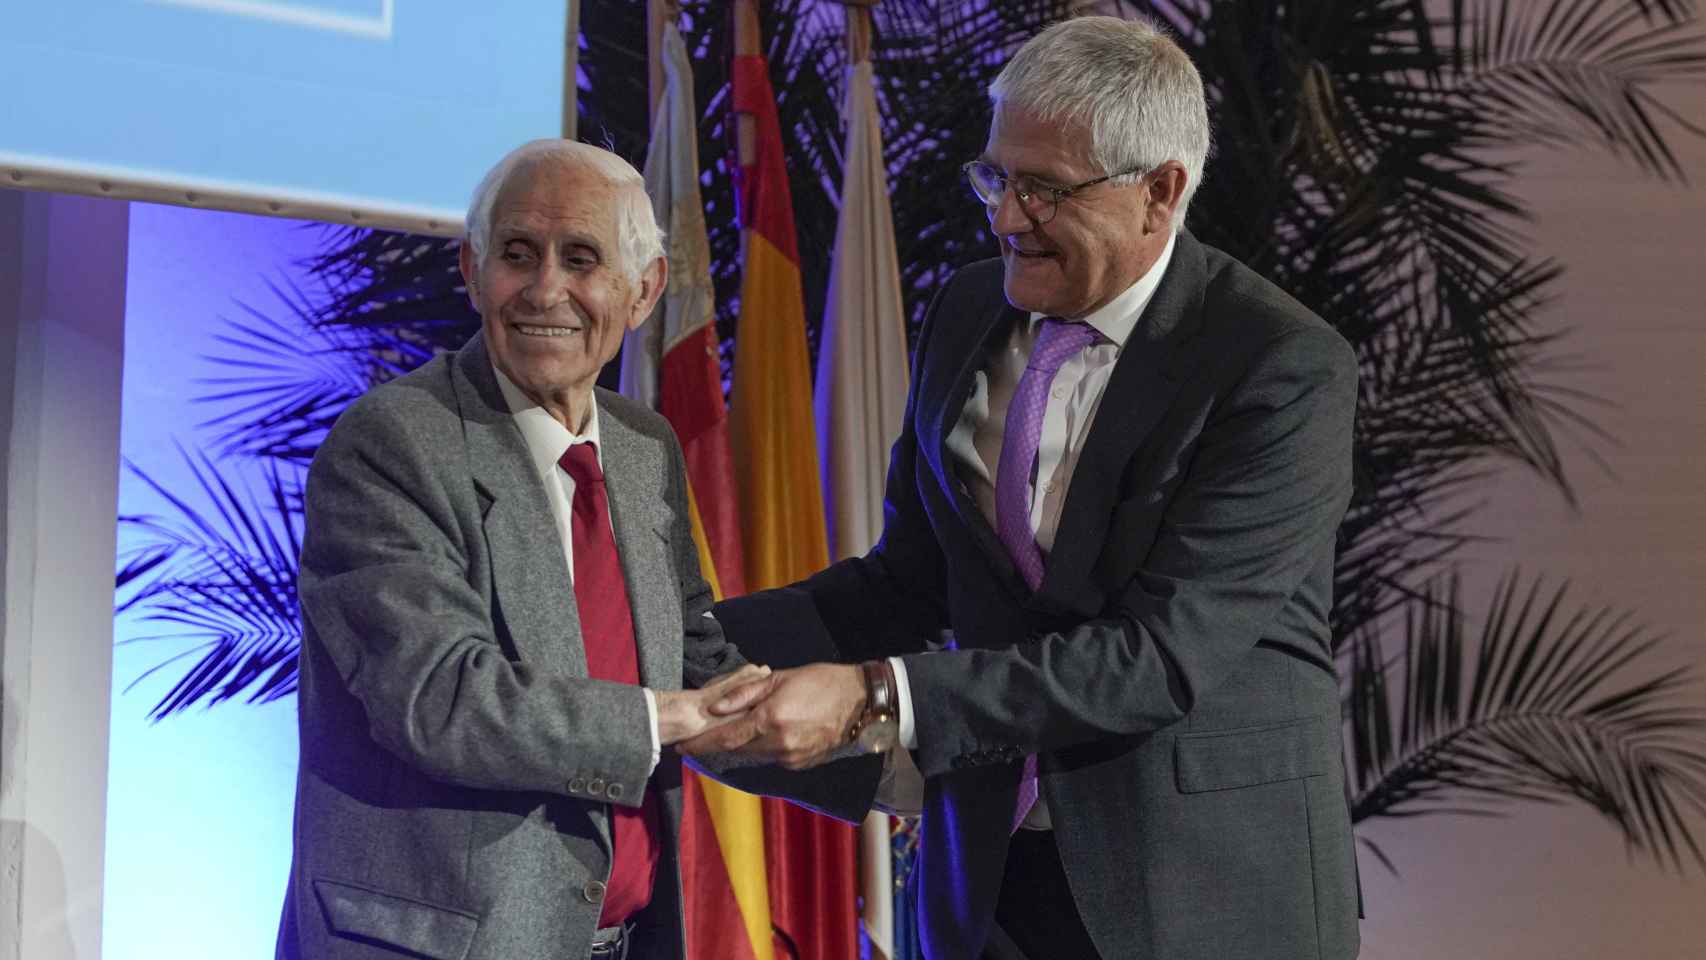 El doctor Juan Bautista Lloret Martí recoge su diploma de Bodas de platino en el 125 aniversario del COMA.